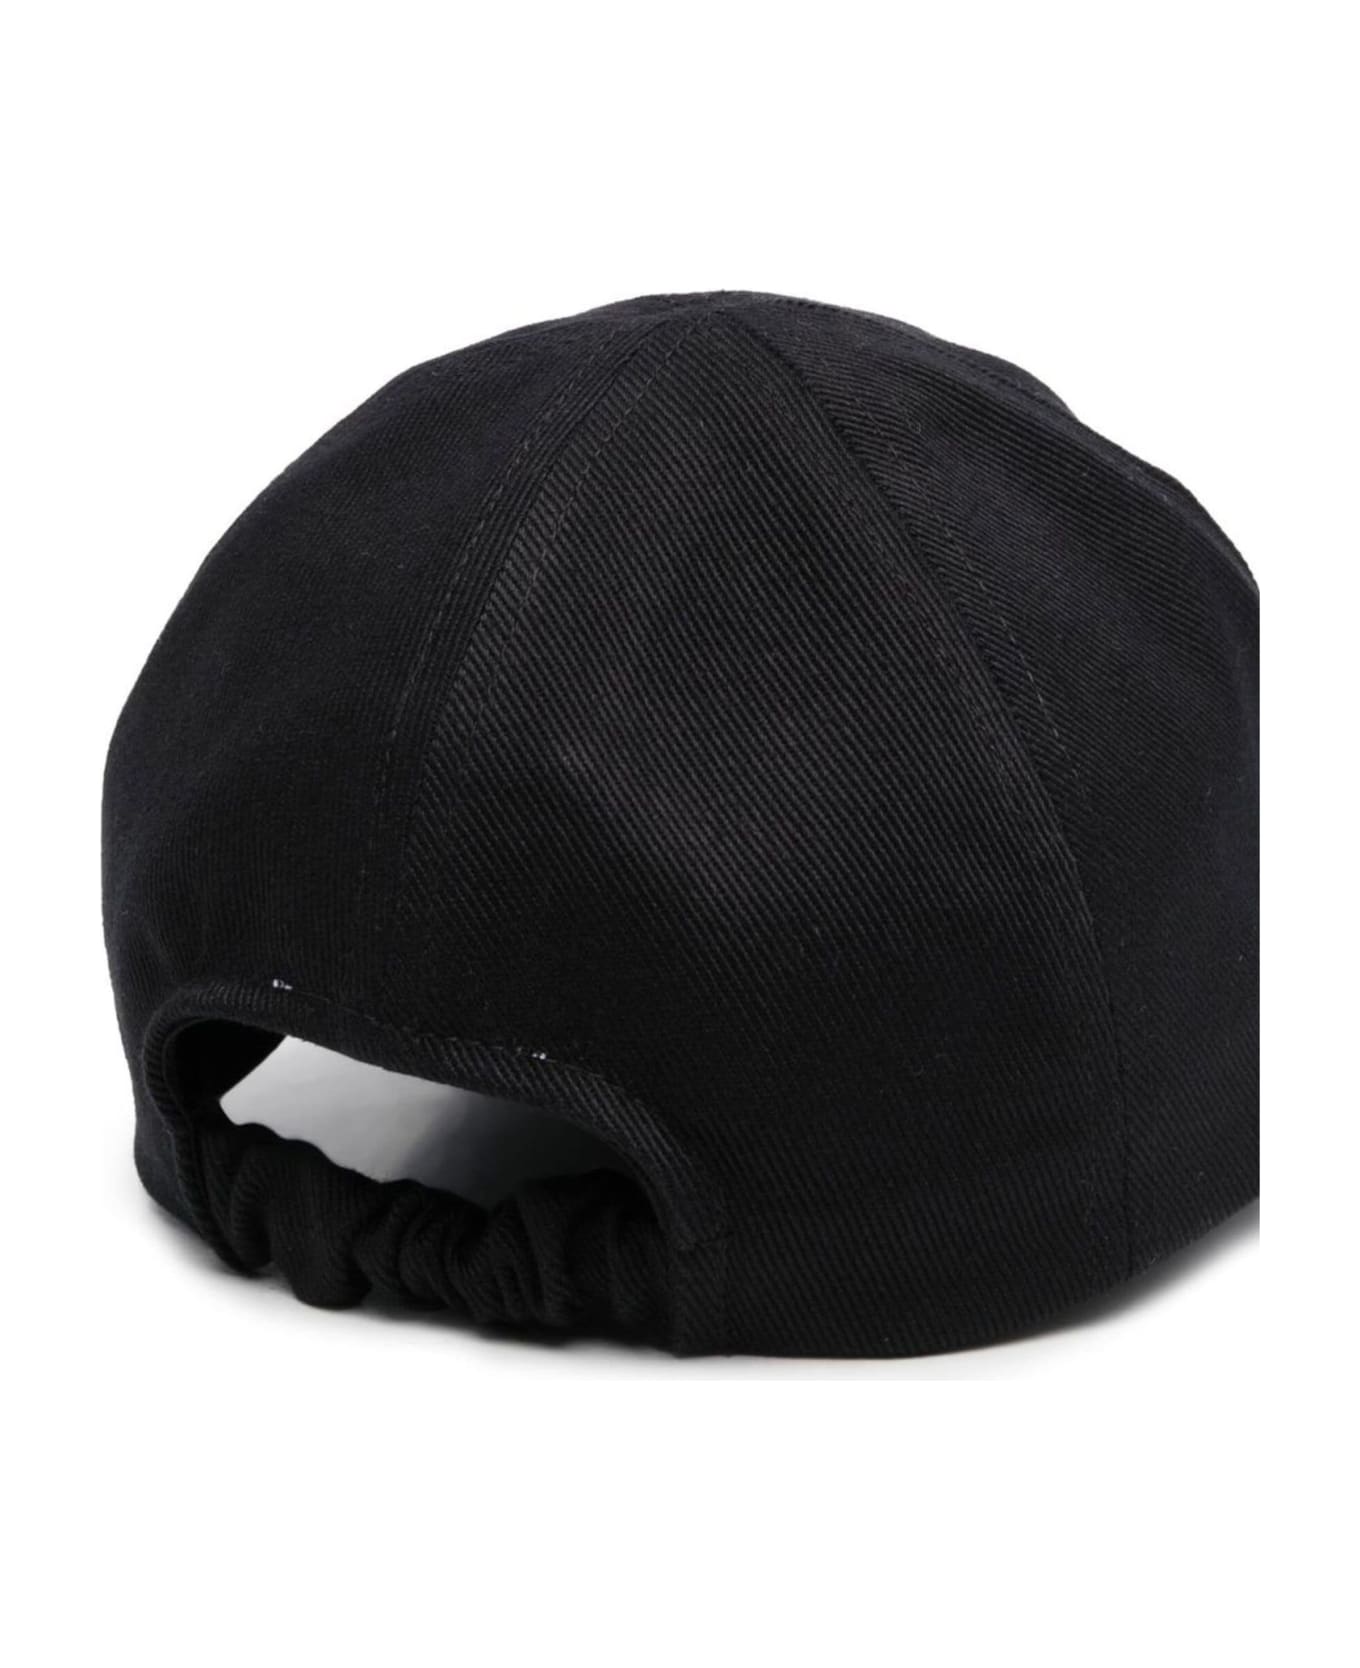 Patou Black Cotton Baseball Cap - Black